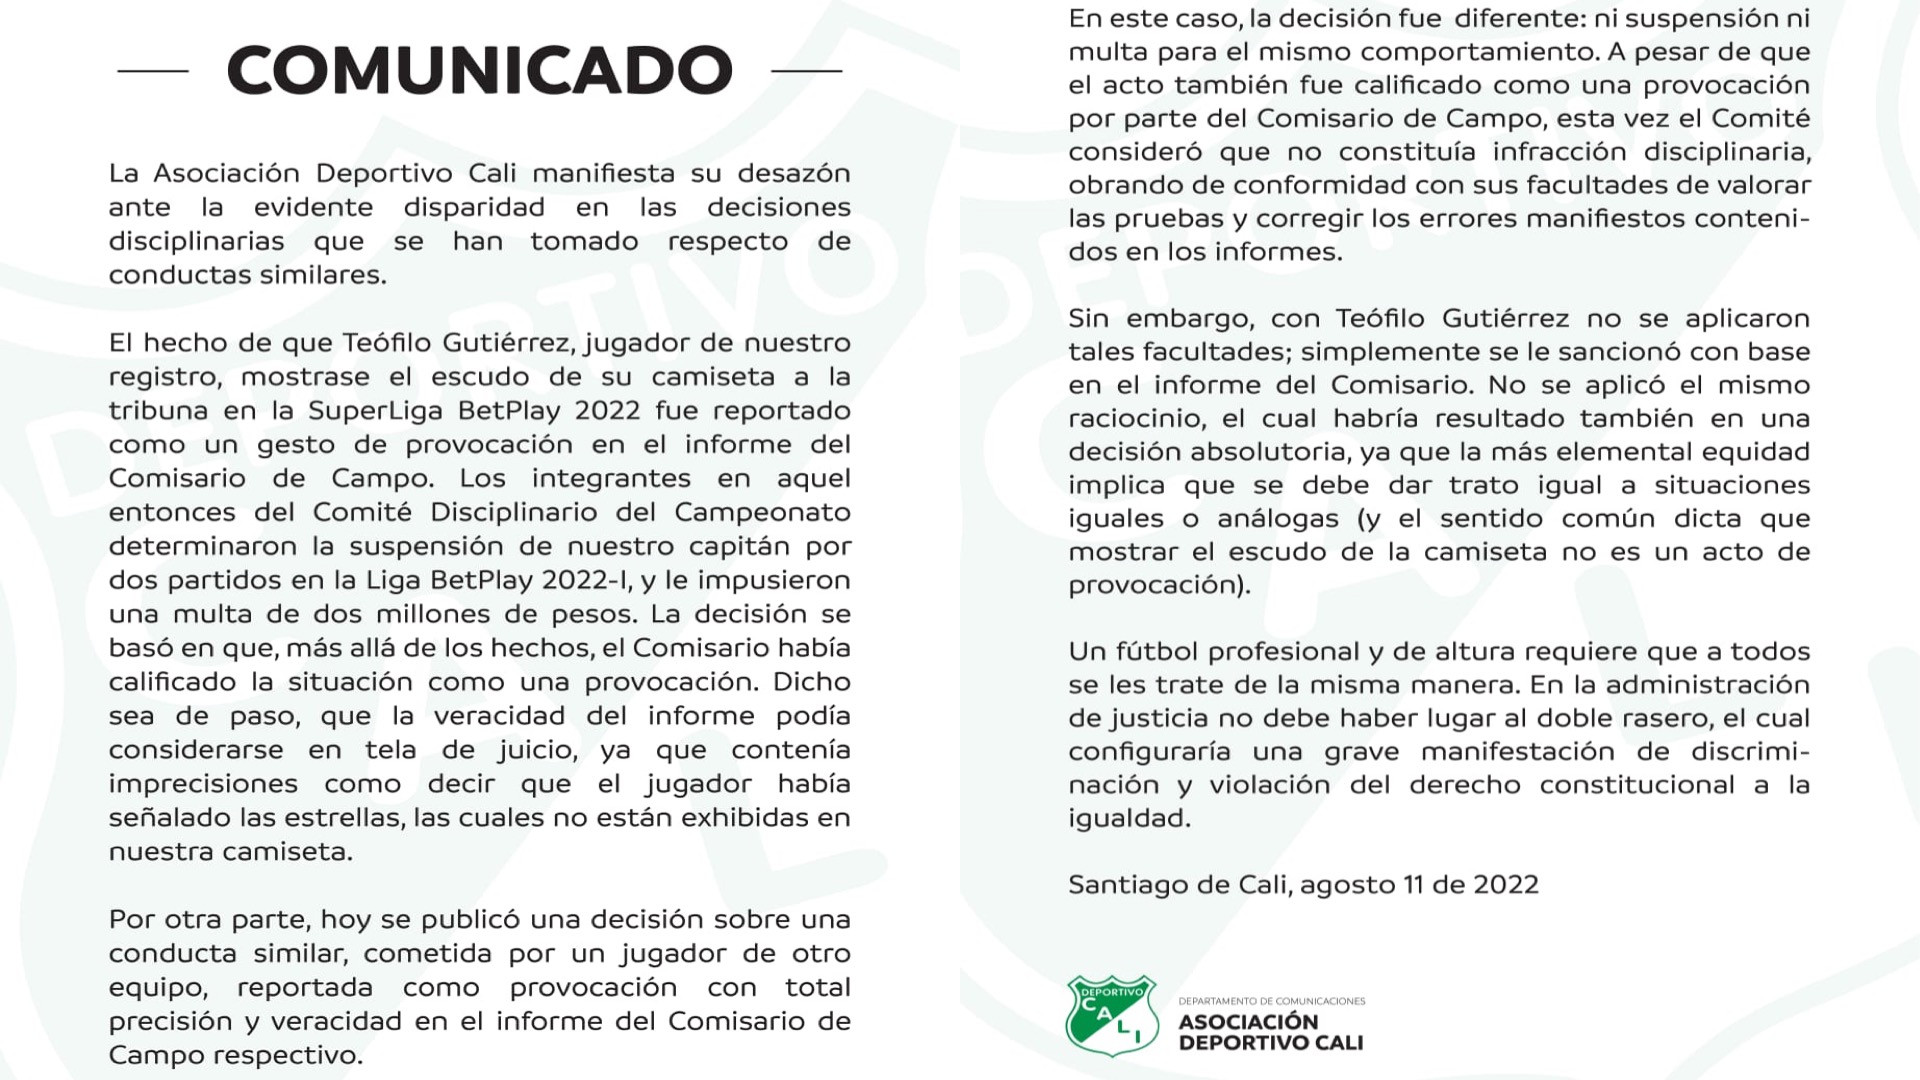 Comunicado del Deportivo Cali sobre la sanción a Teófilo Gutiérrez por supuesta provocación en la Superliga BetPlay 2022 / (Twitter: @AsoDeporCali)